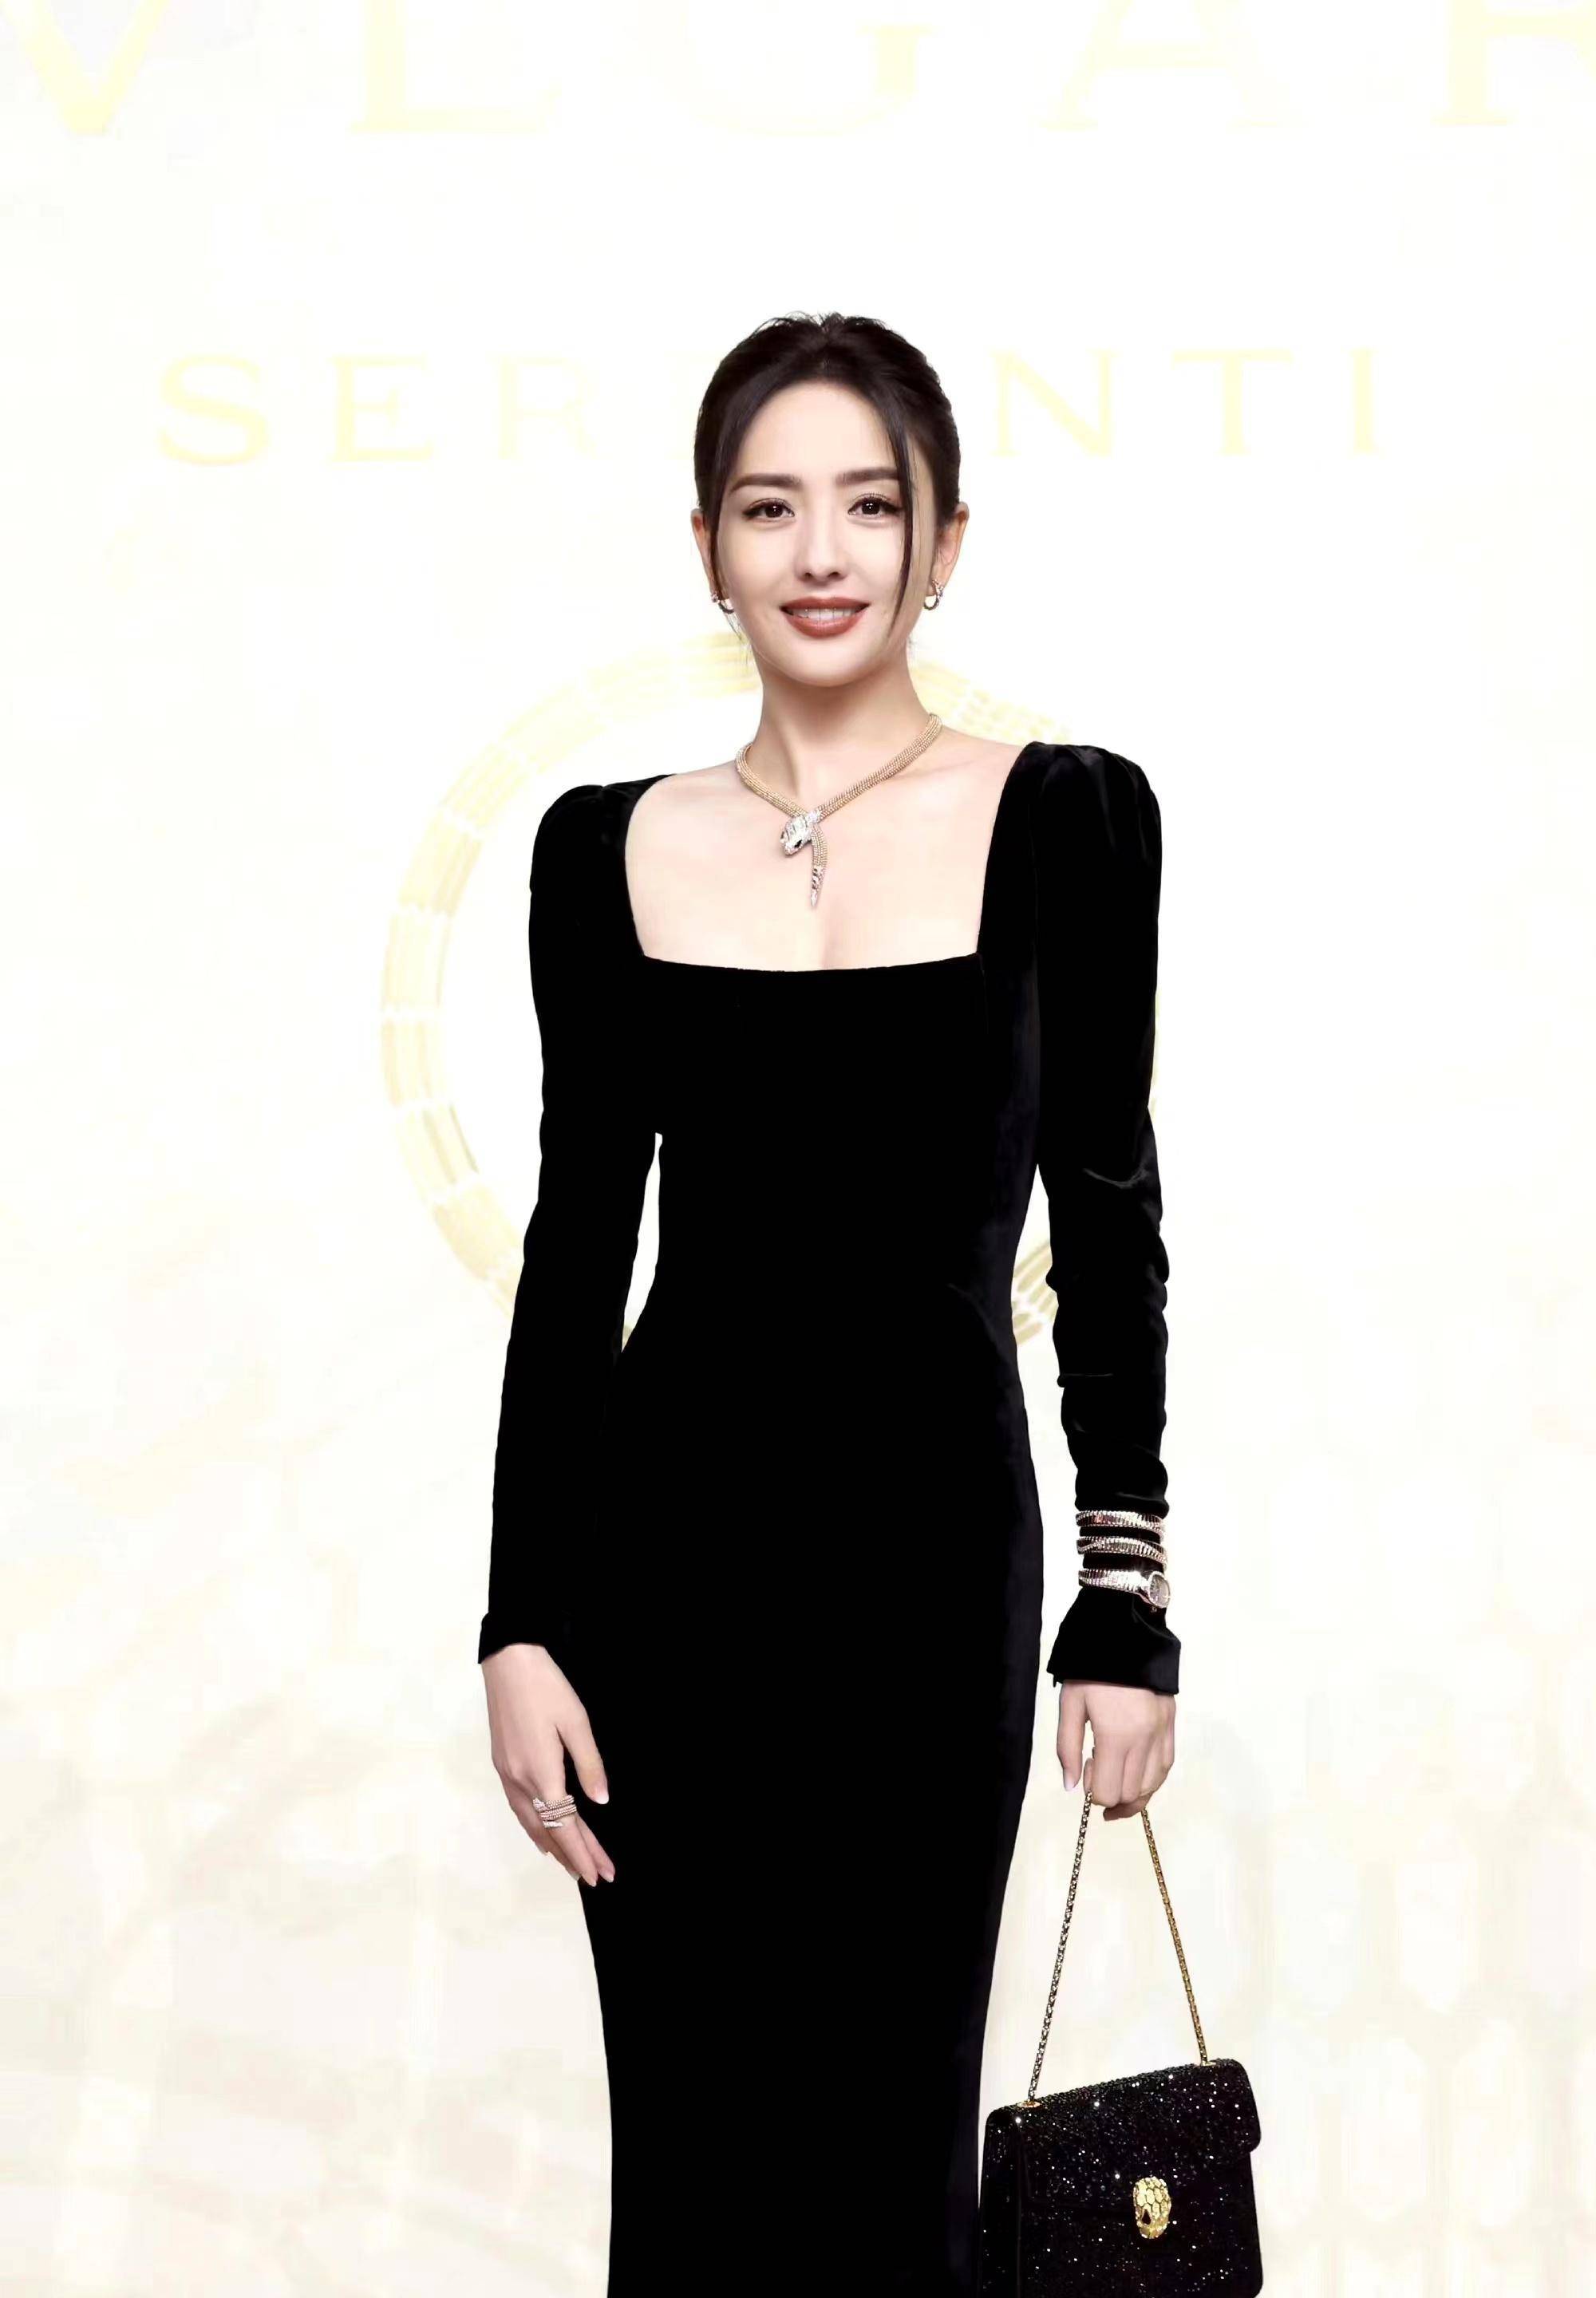 佟丽娅出席活动,穿一条黑色丝绒长裙,温柔优雅又大方!